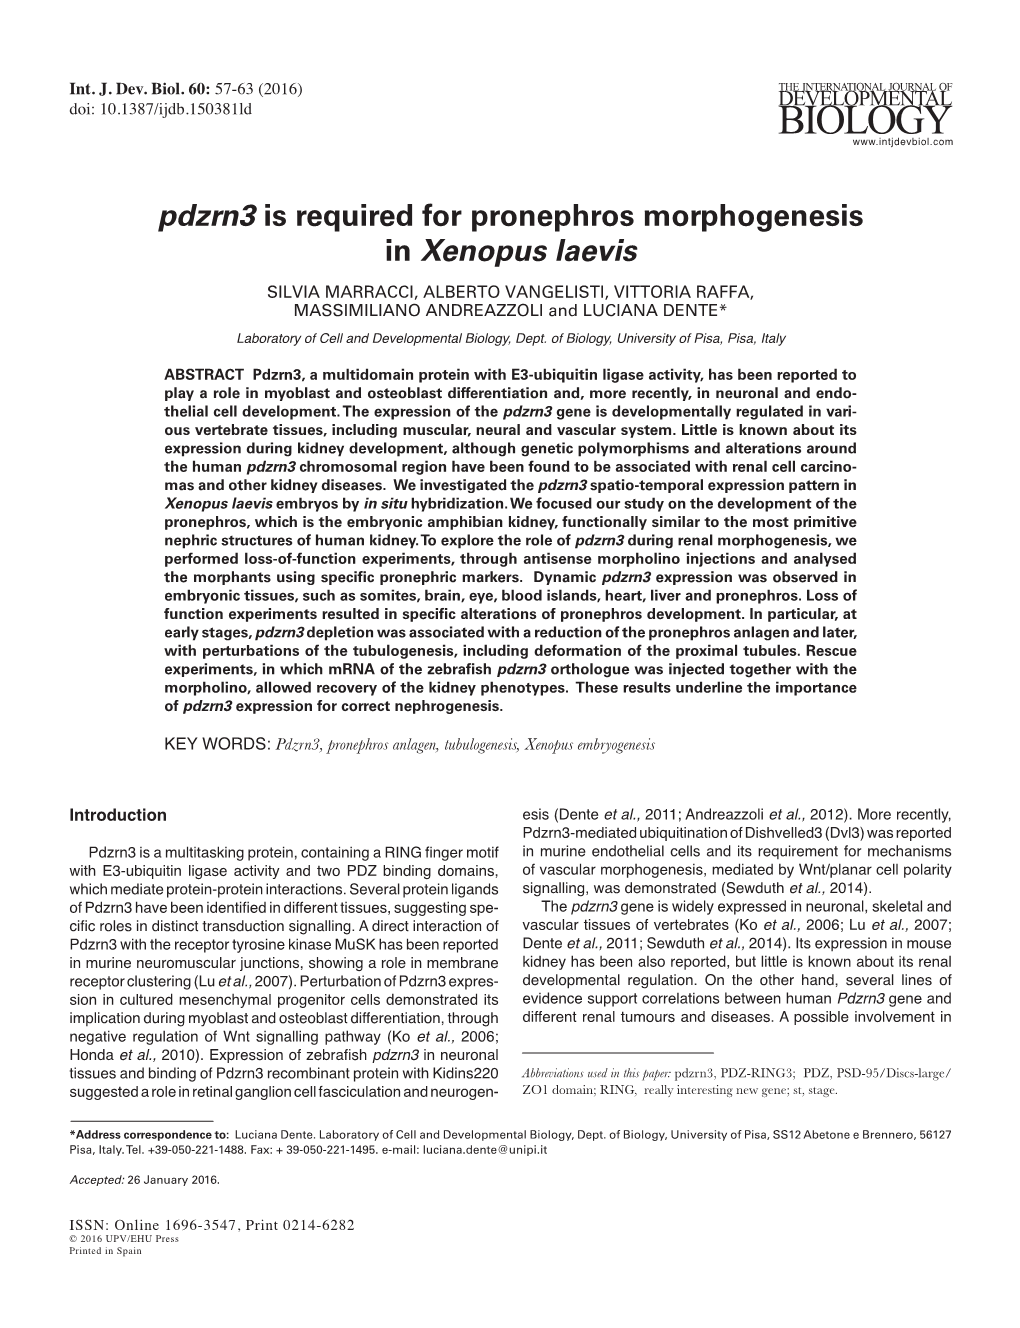 Pdzrn3 Is Required for Pronephros Morphogenesis in Xenopus Laevis SILVIA MARRACCI, ALBERTO VANGELISTI, VITTORIA RAFFA, MASSIMILIANO ANDREAZZOLI and LUCIANA DENTE*